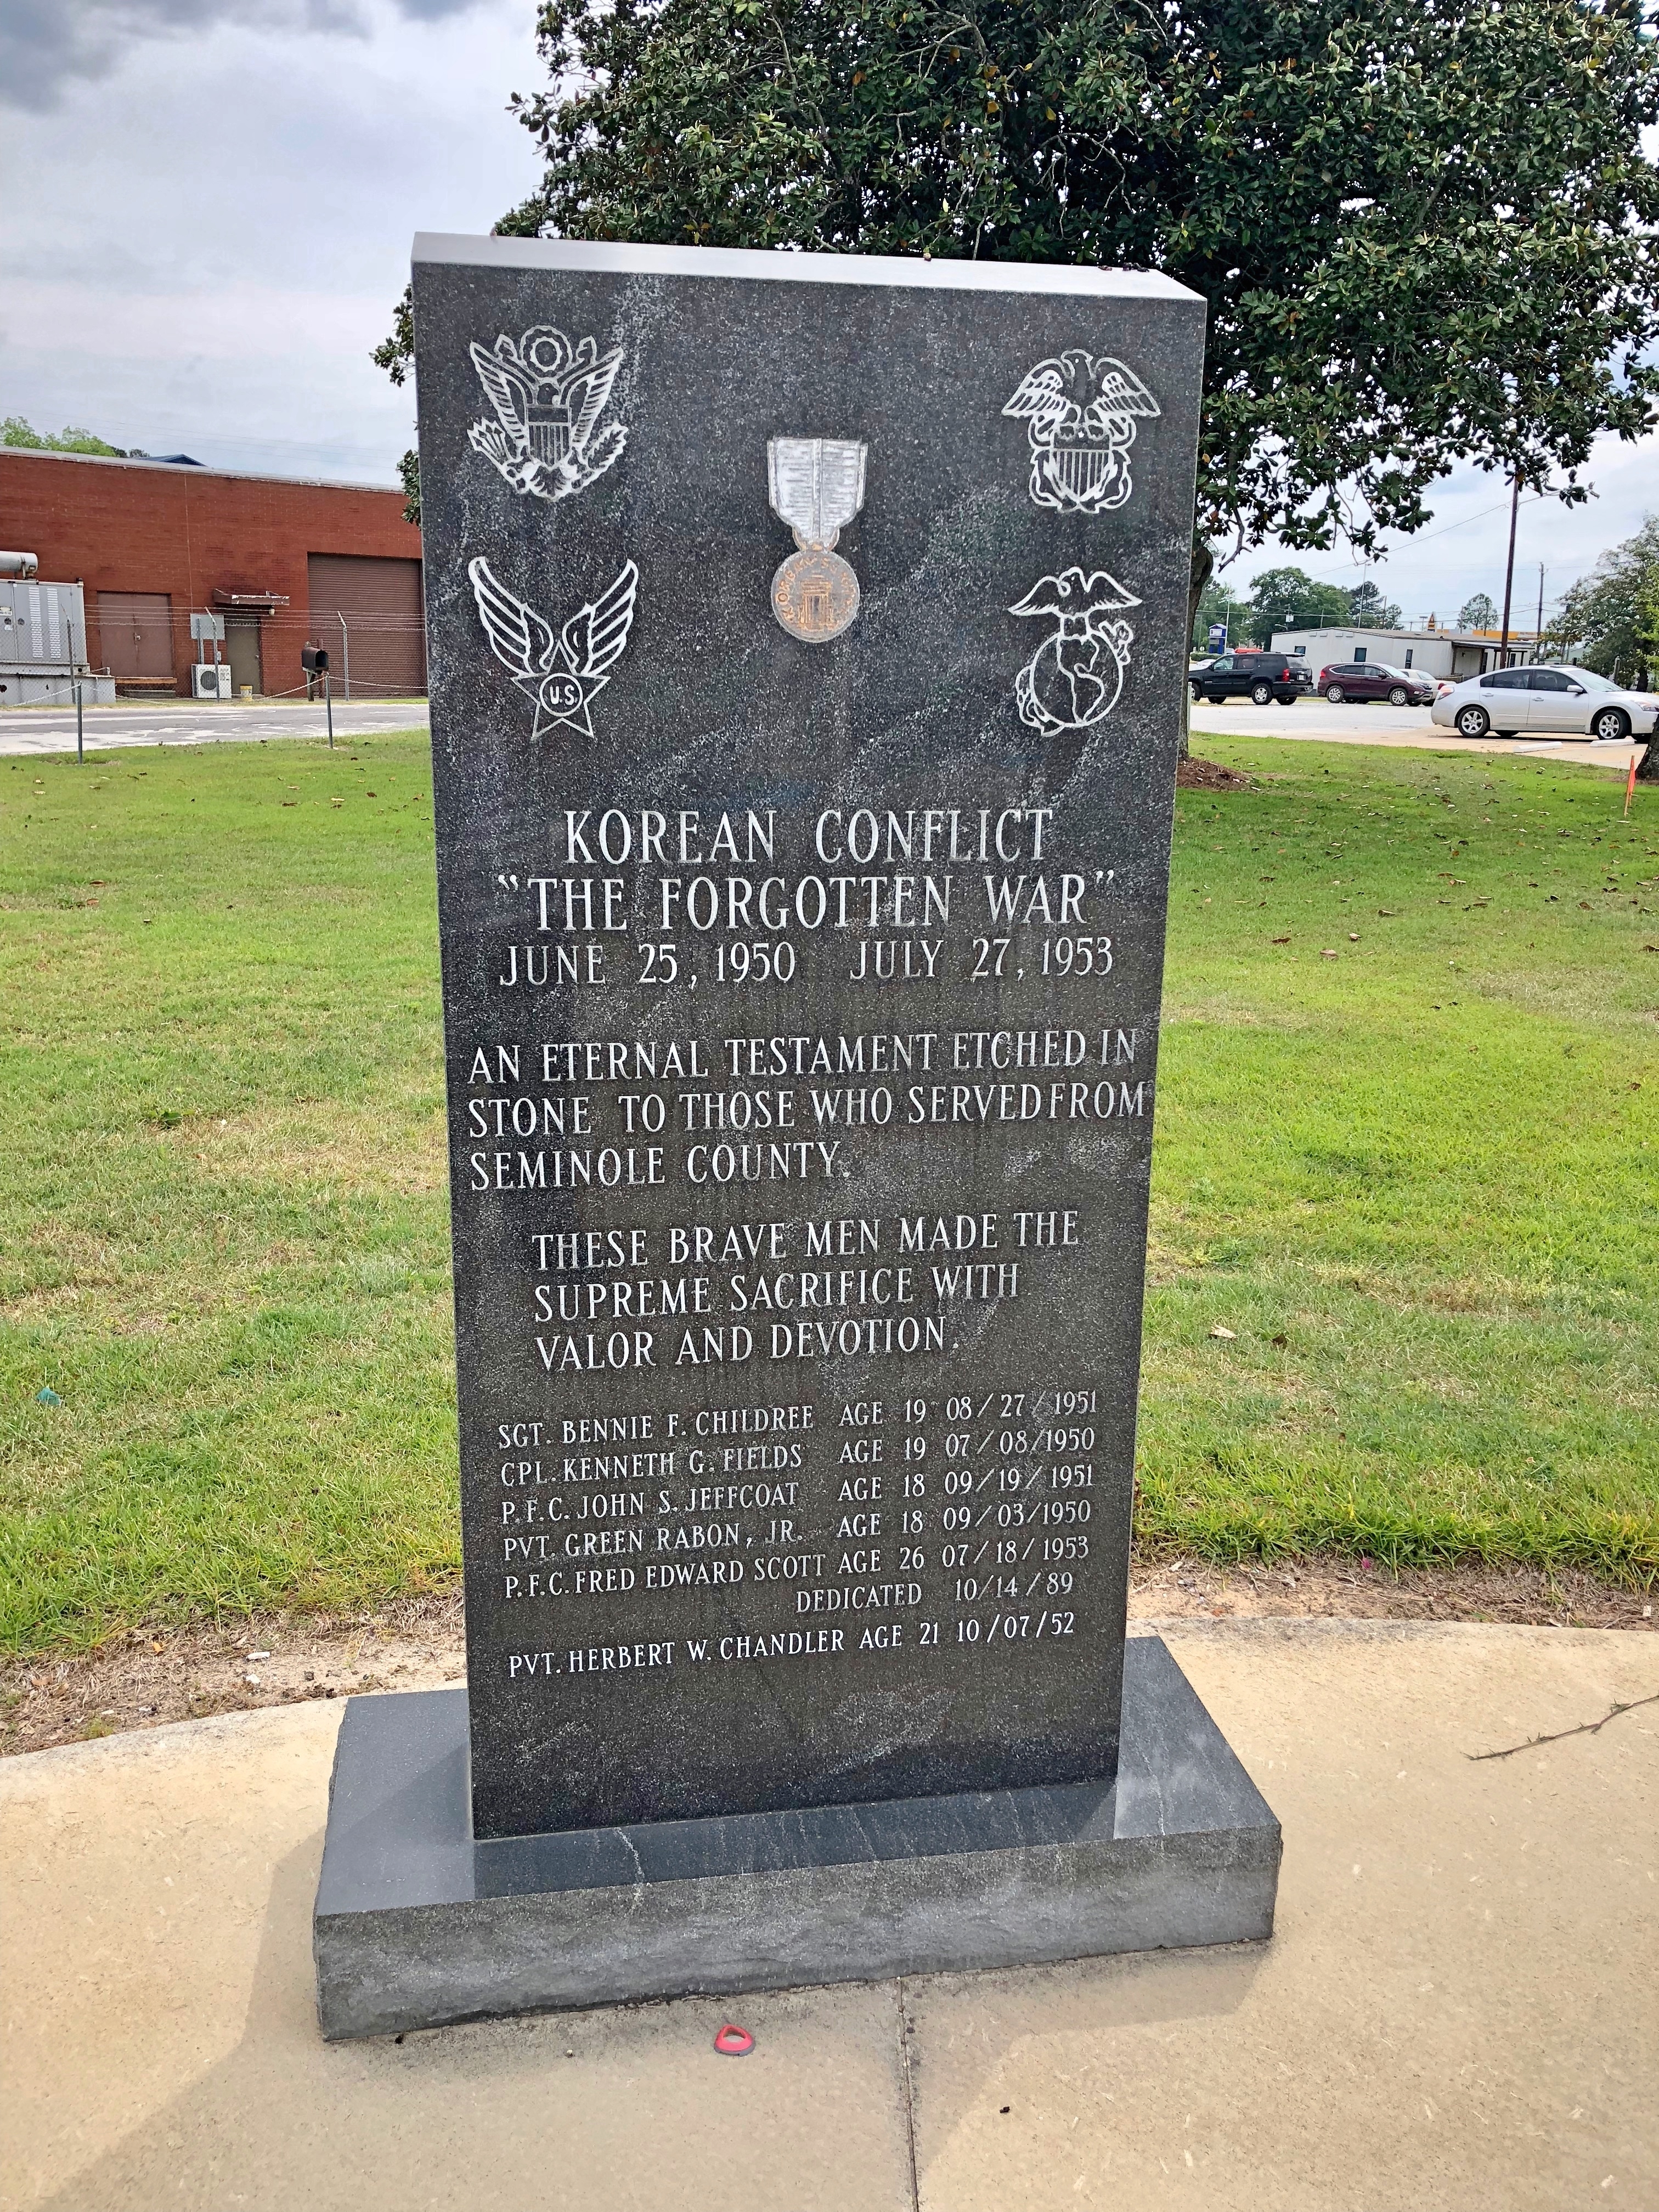 Korean Conflict "The Forgotten War" Memorial